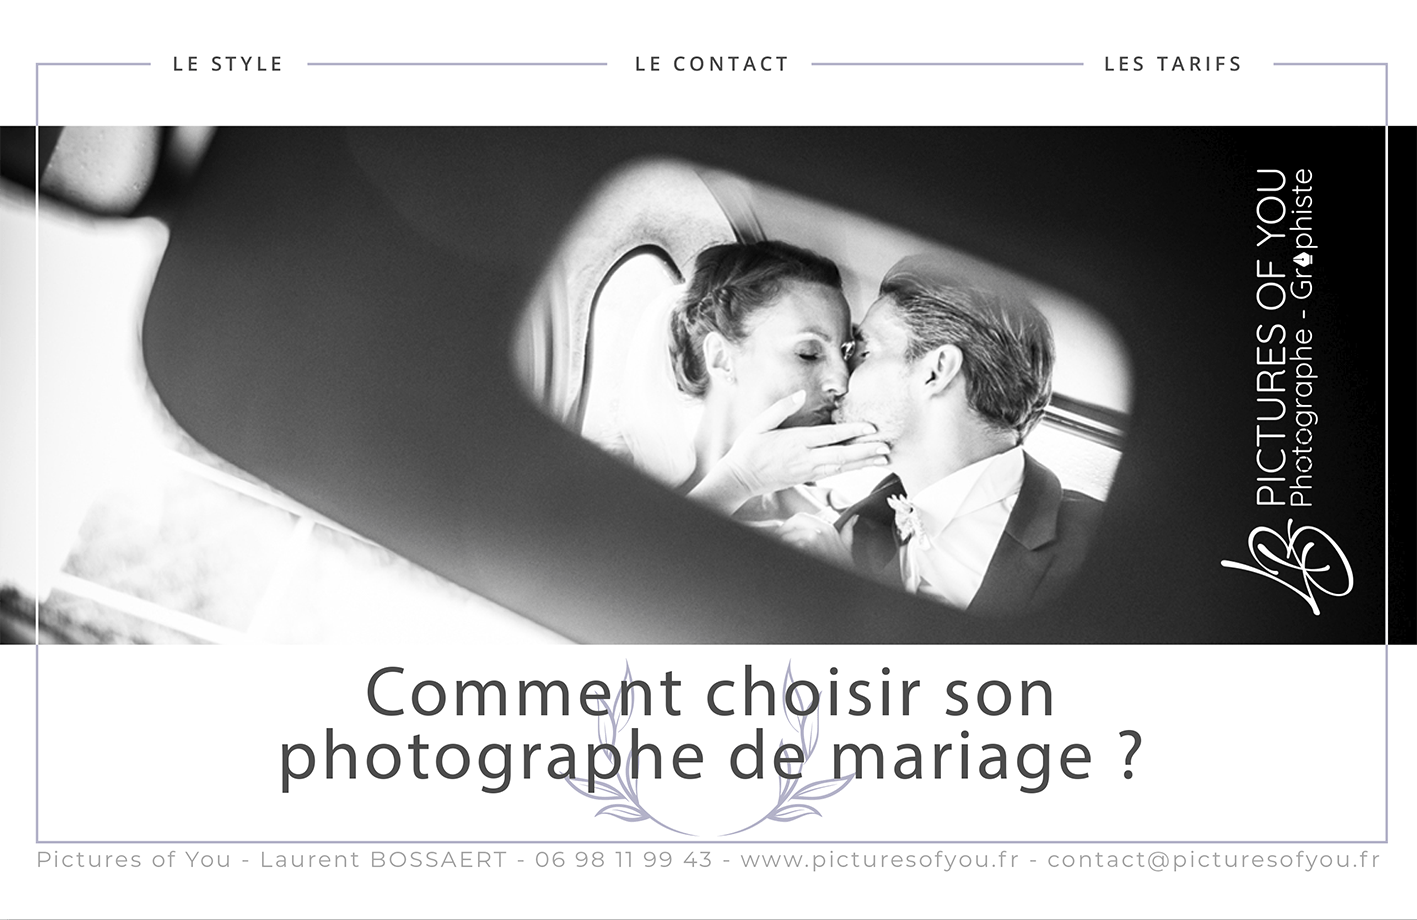 Comment choisir le photographe de mariage par Laurent Bossaert - Pictures of You - Hauts de France